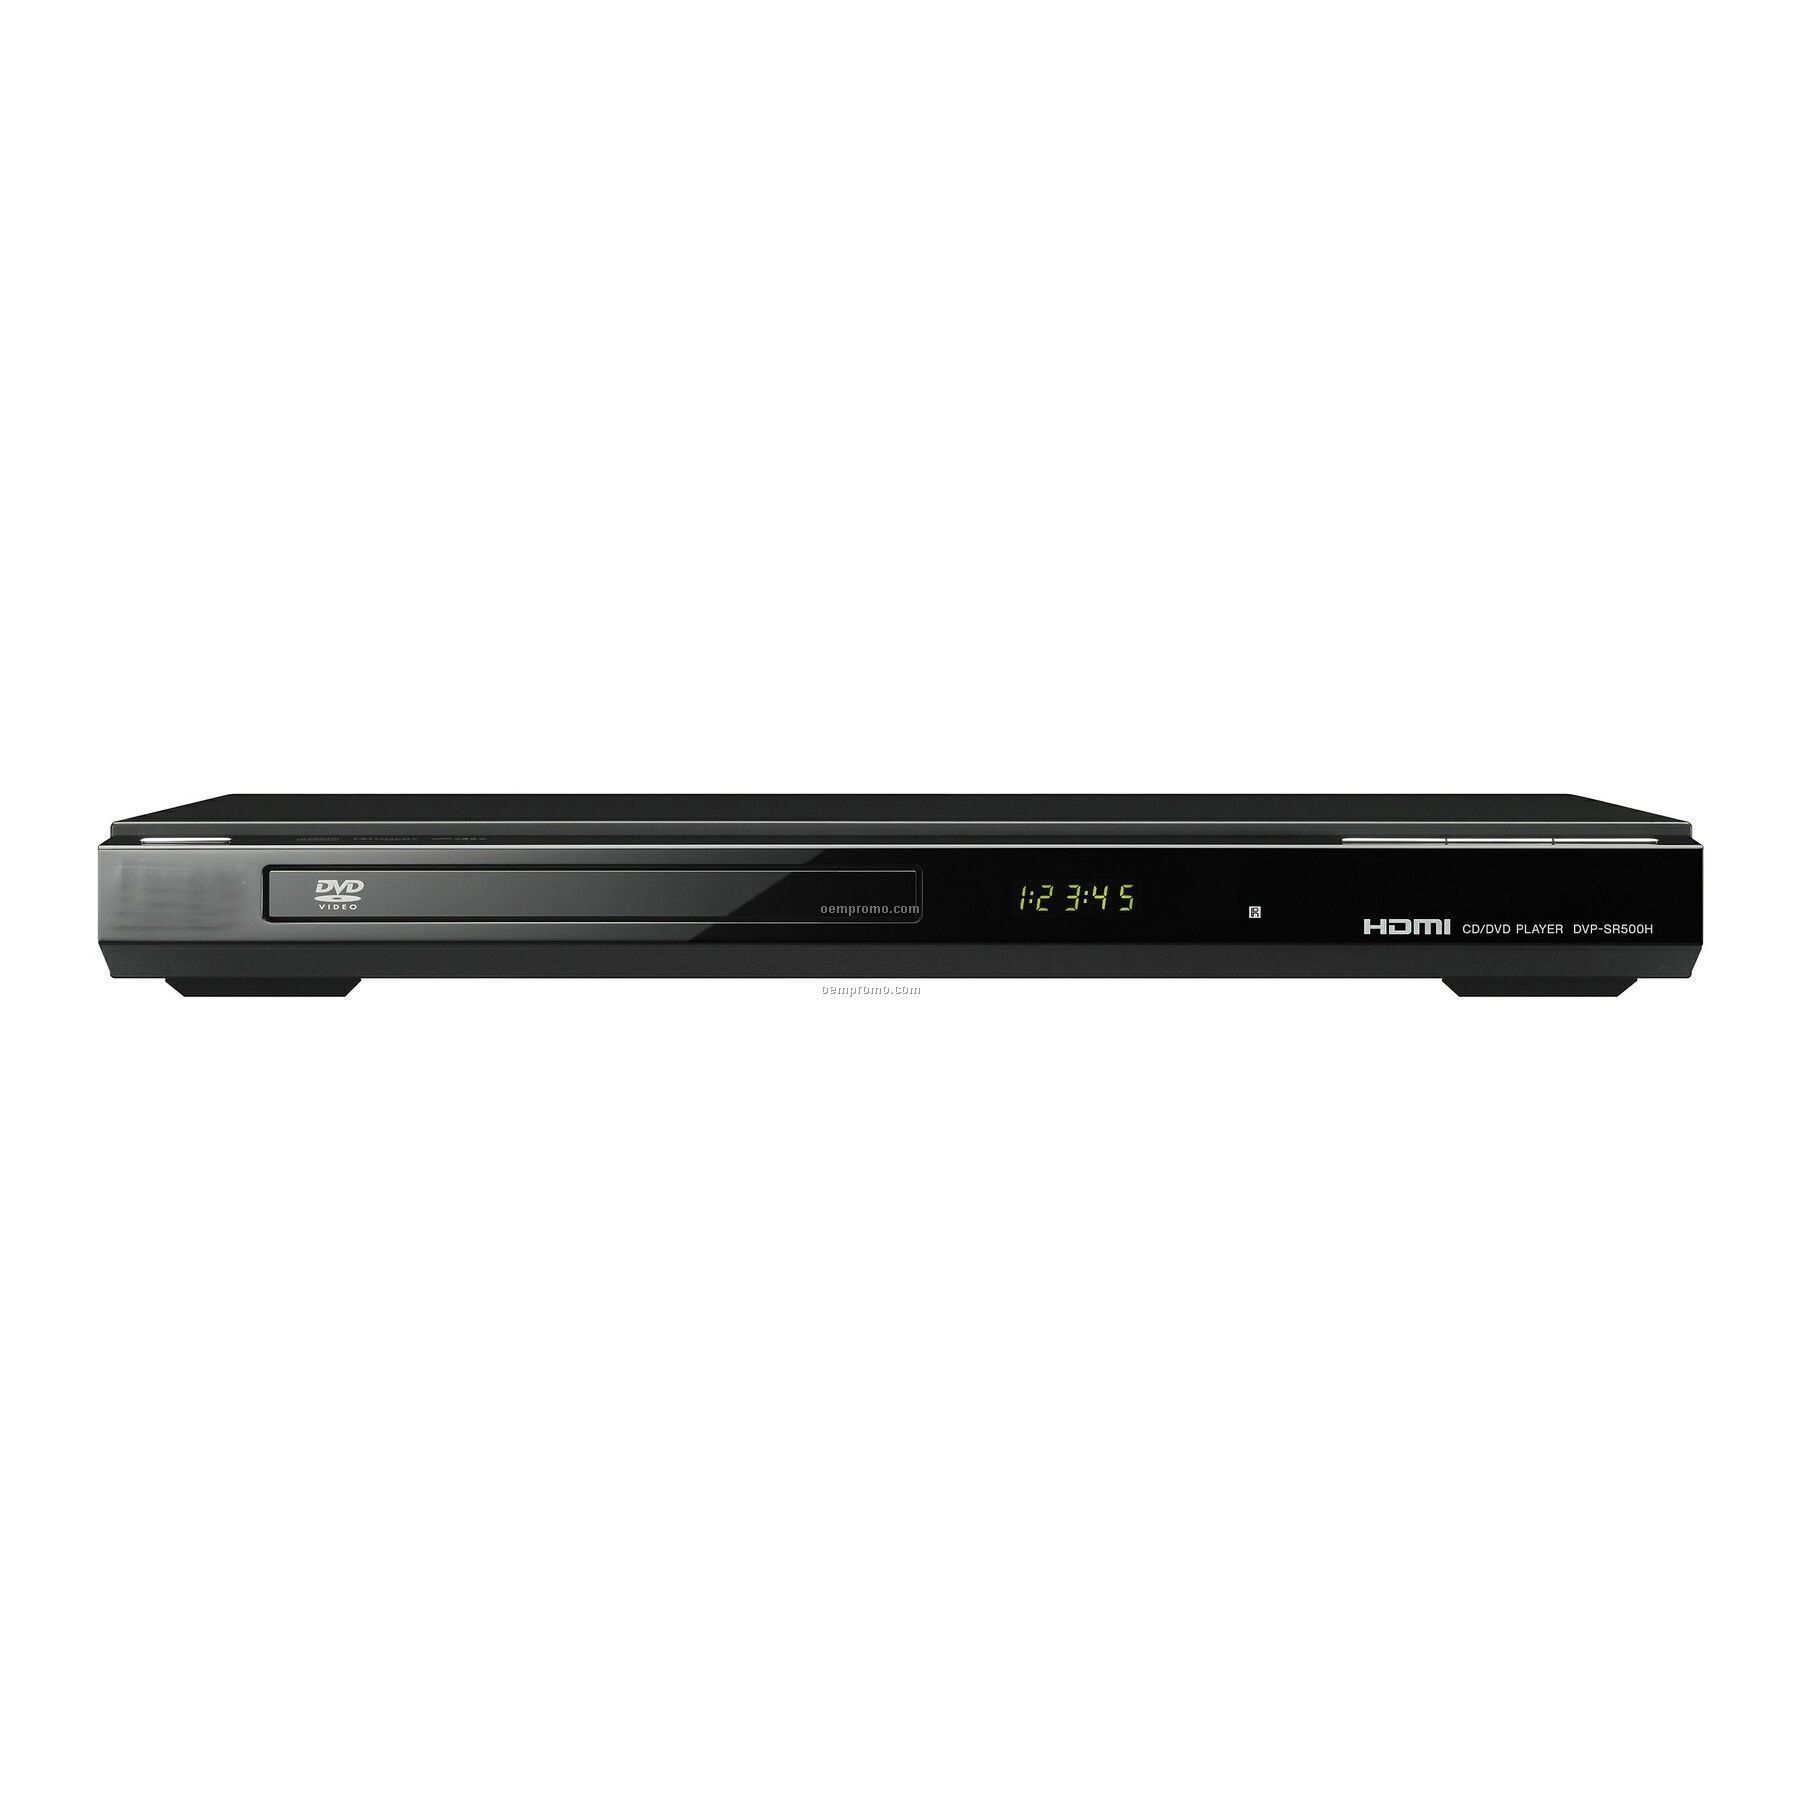 1080p Upscaling DVD Player